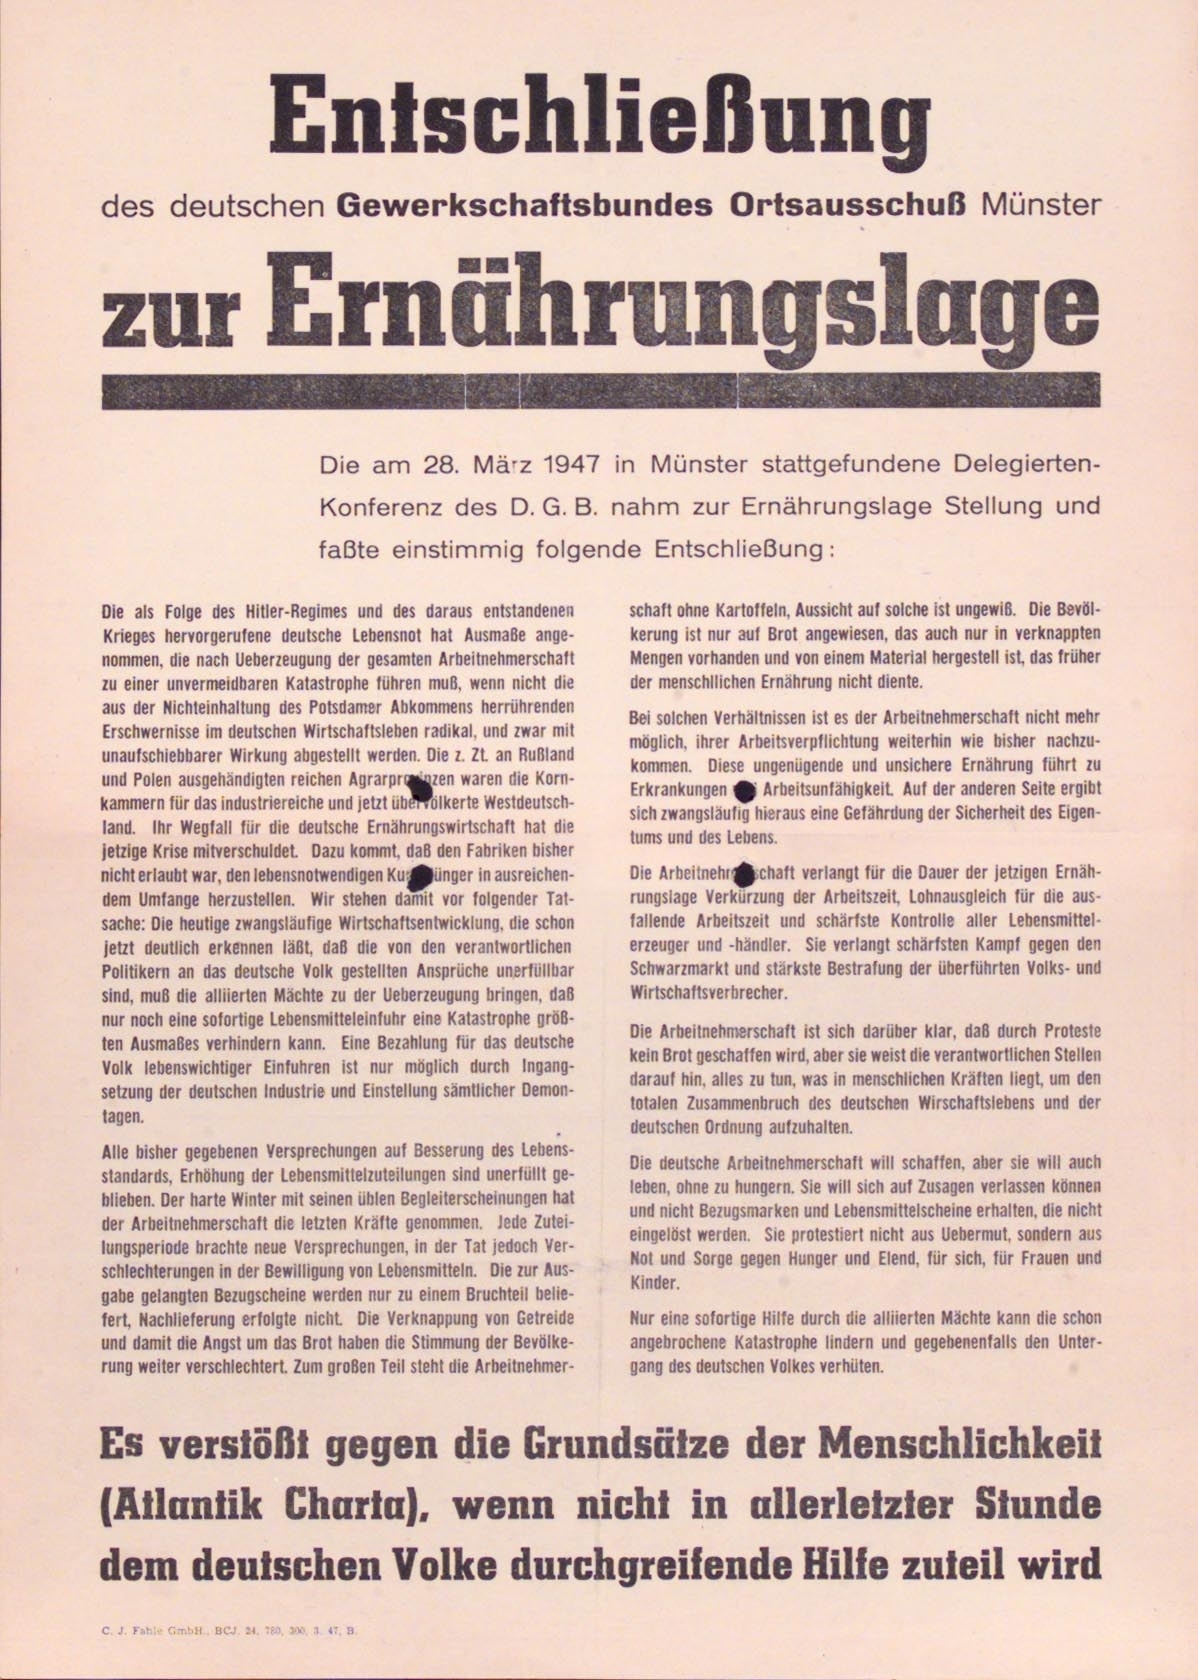 Plakat mit der Entscshließung des deutschen Gewerkschaftsbundes Ortsausschuss Münster zur Ernährungslage